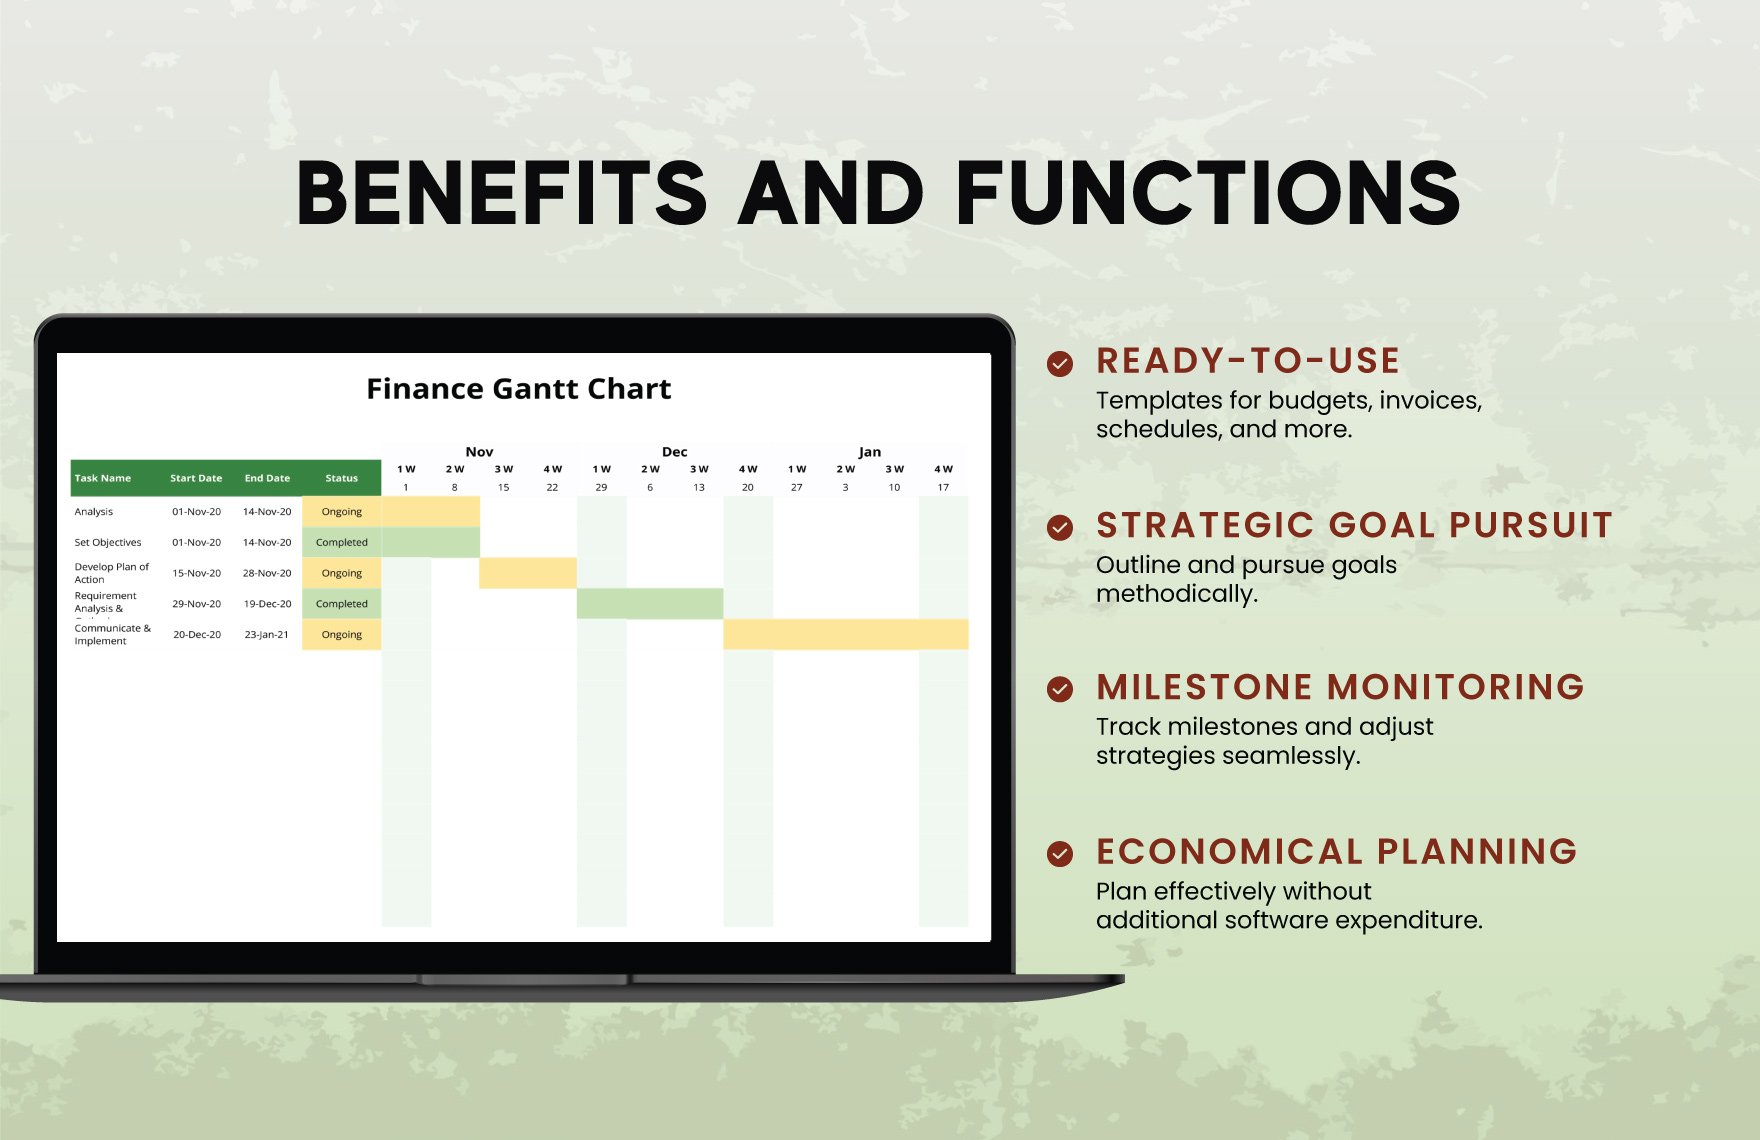 Simple Finance Gantt Chart Template